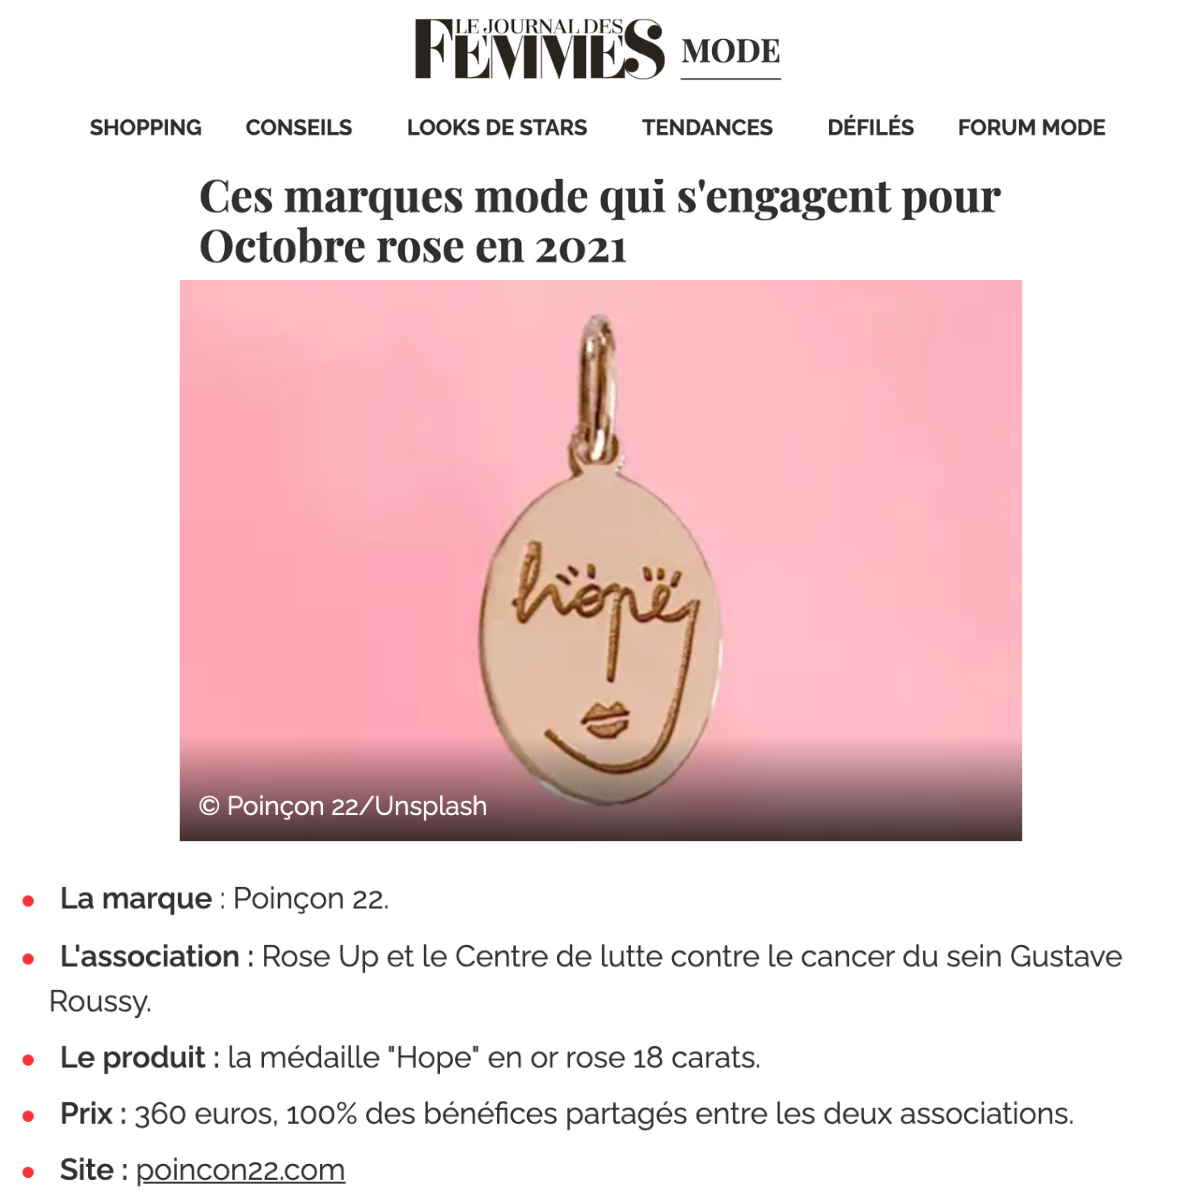 Le Journal des femmes - October 2021